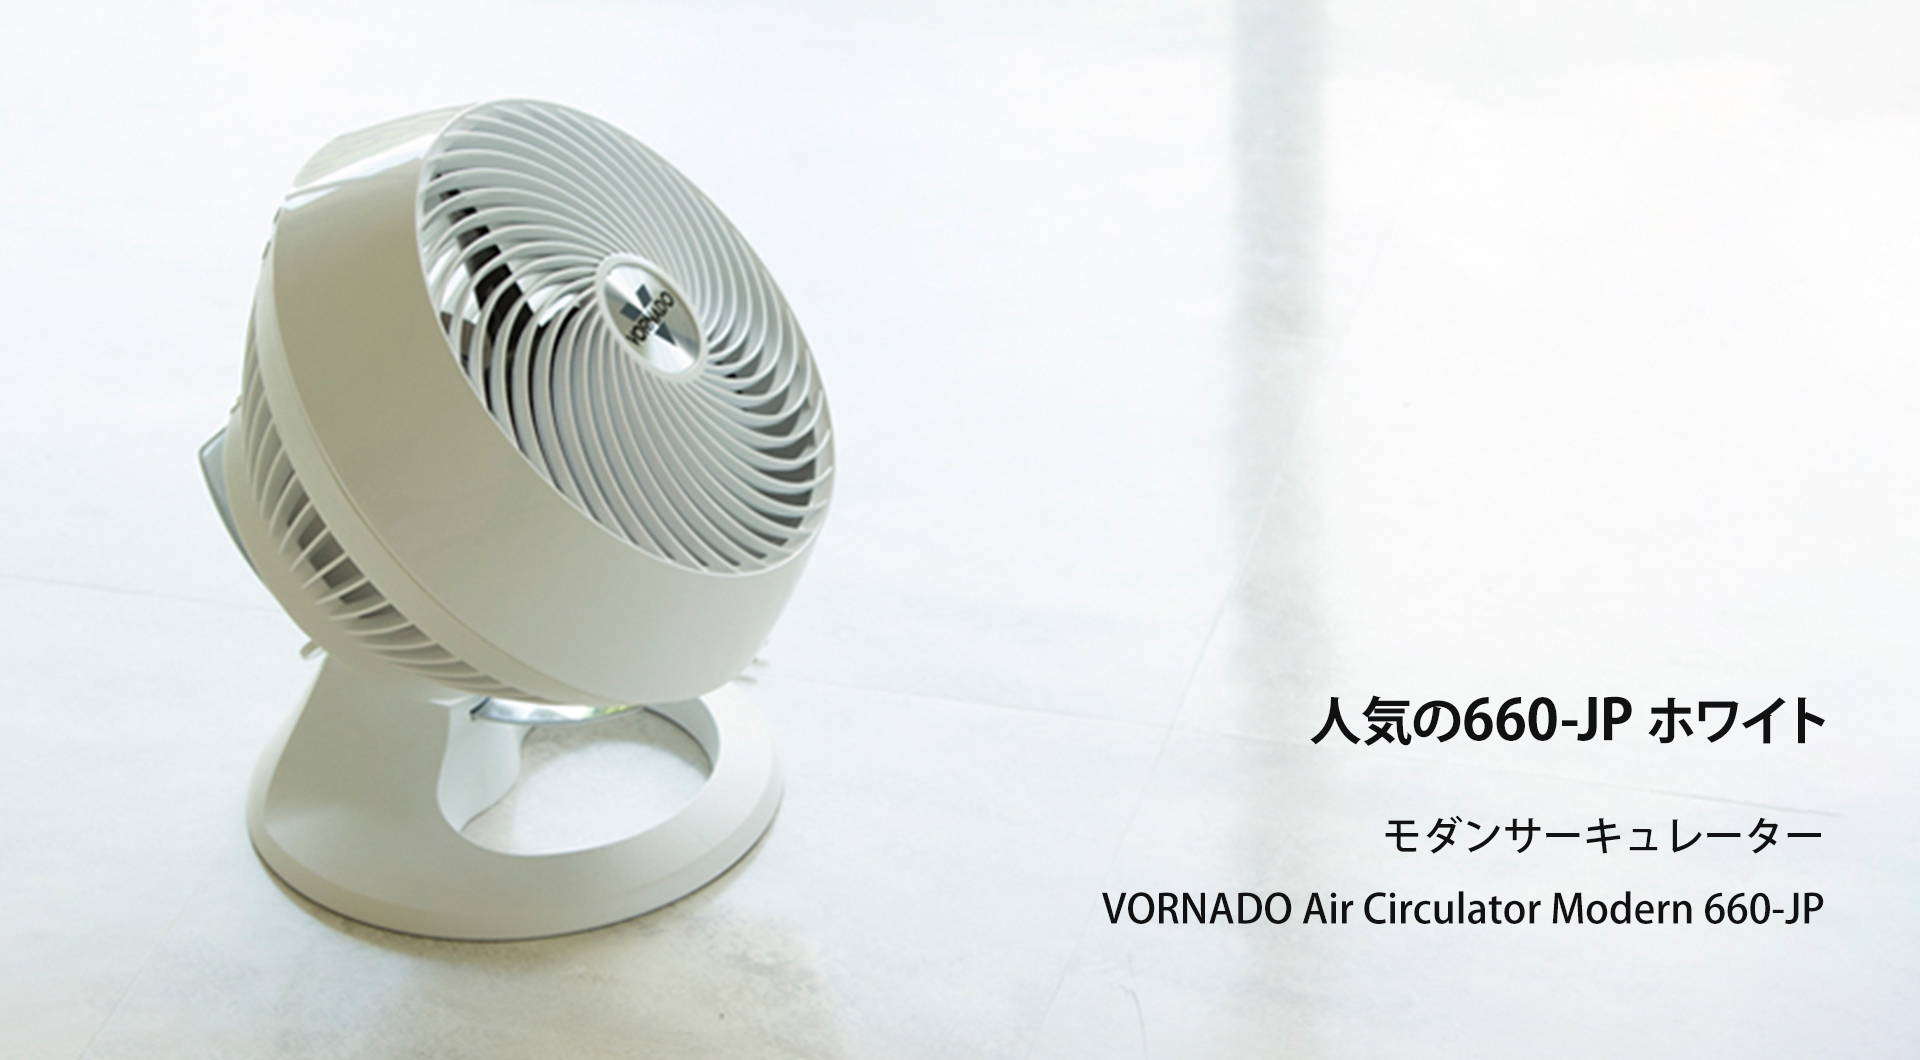 660-JP 白 - VORNADO - ボルネード公式サイト